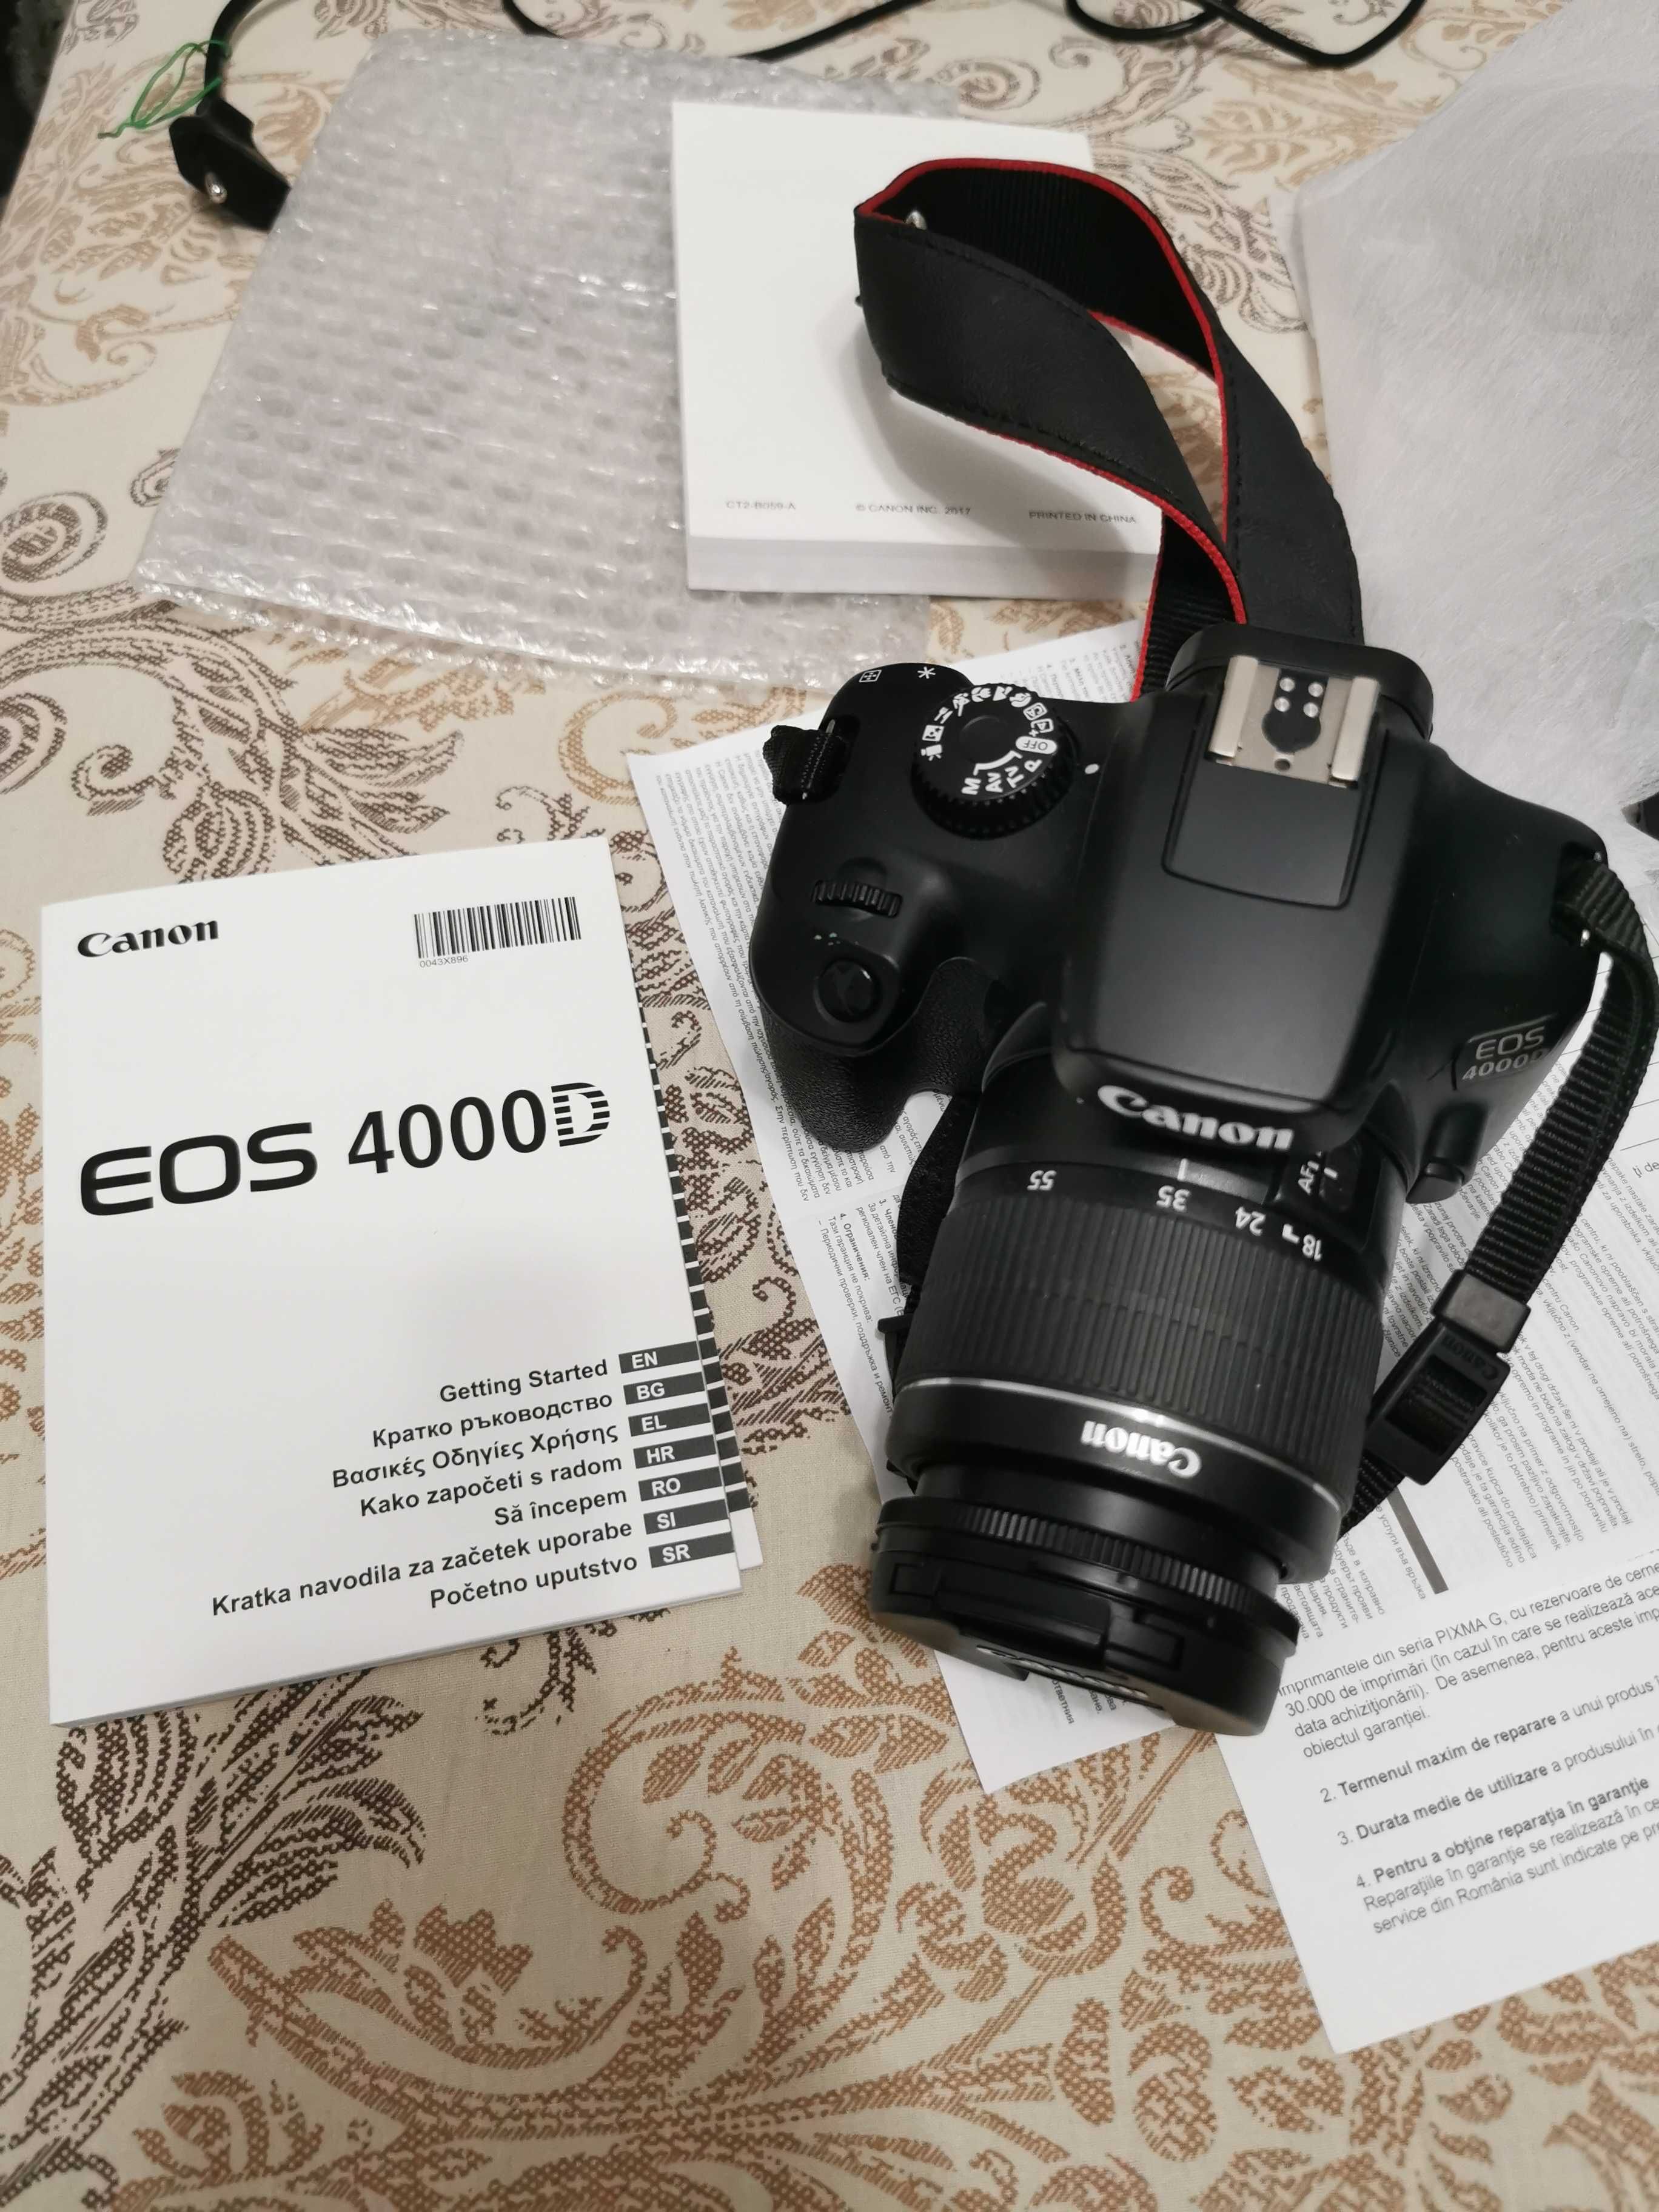 DSLR Canon EOS 4000D 18MP, Obiectiv EF-S 18-55mm